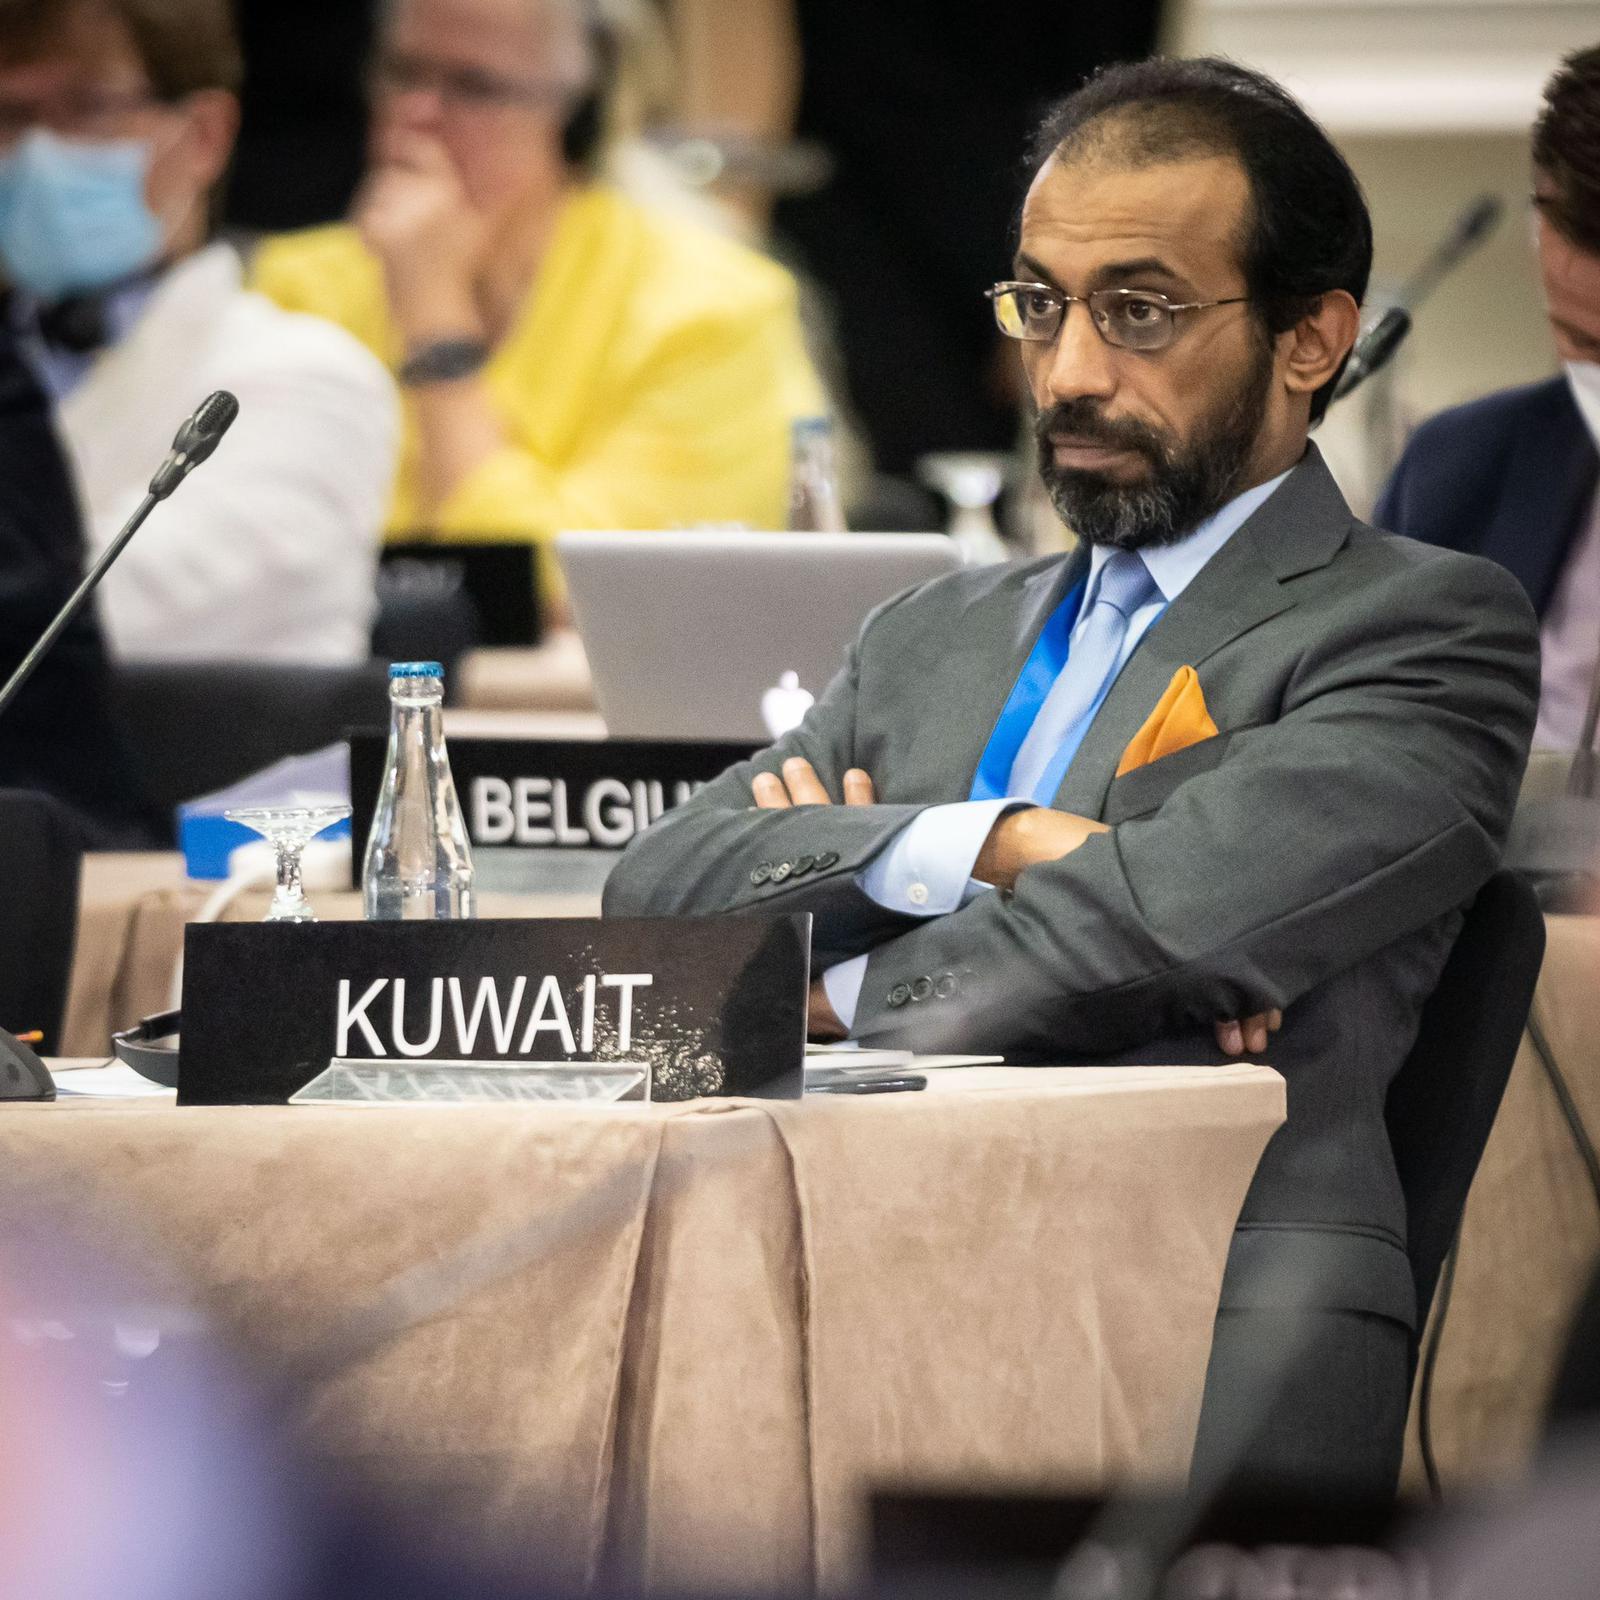 وكيل الشعبة البرلمانية النائب د. عبيد الوسمي يشيد بفاعلية المشاركة الكويتية بمؤتمر الاتحاد البرلماني الدولي